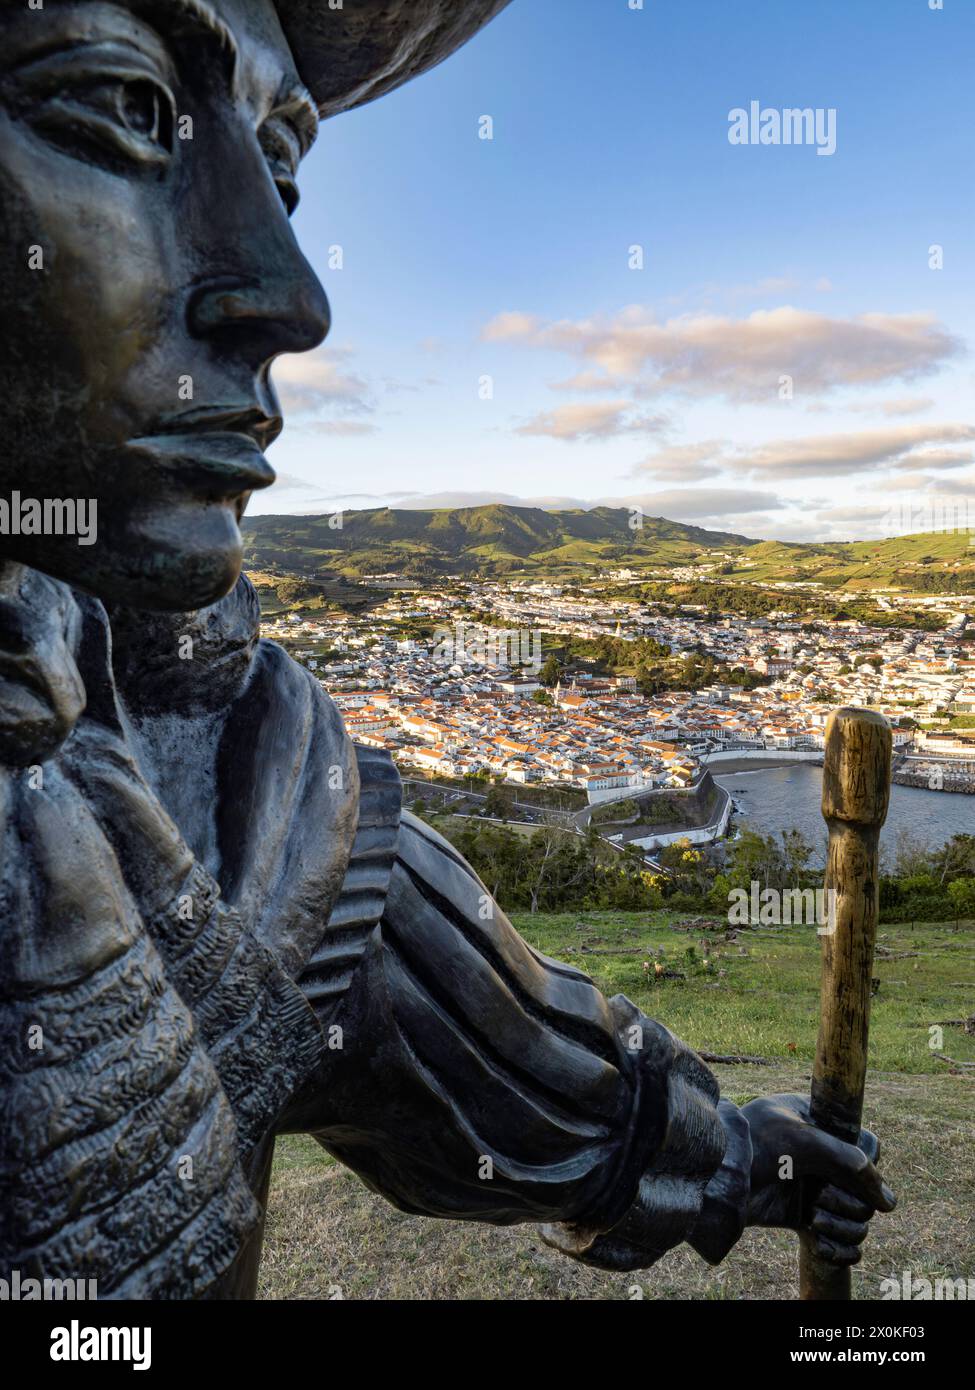 Città di Angra do Heroismo, Azzorre, statua di D. Afonso vi secondo re del Portogallo, Terceira, vista dal Monte Brasil, isola, arcipelago dell'Oceano Atlantico Foto Stock